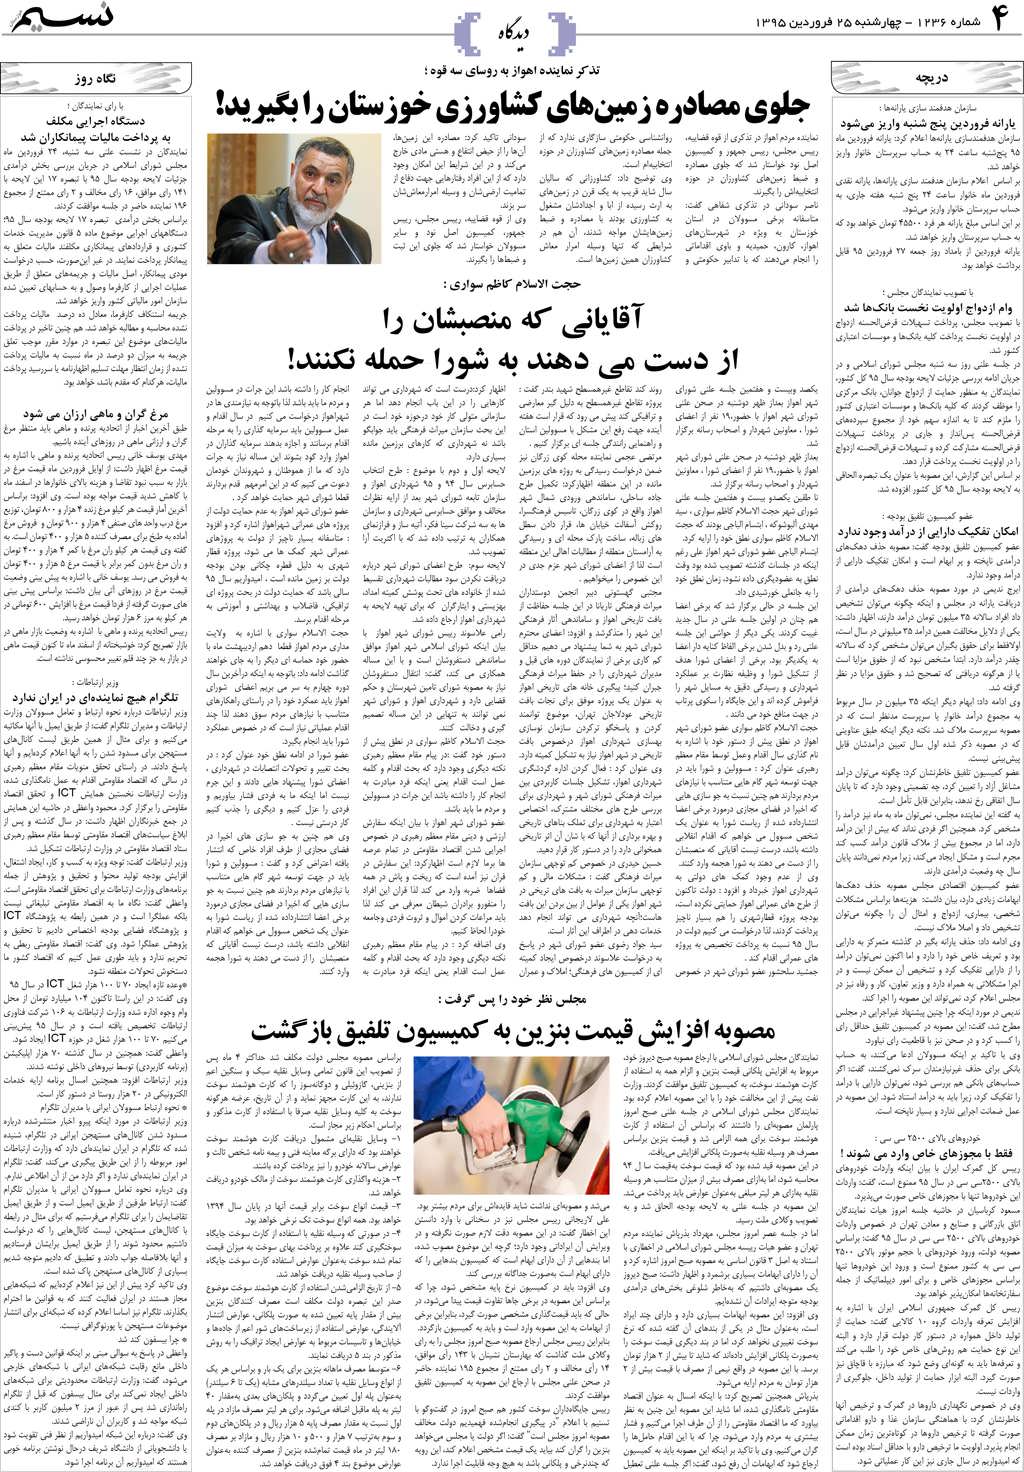 صفحه دیدگاه روزنامه نسیم شماره 1236